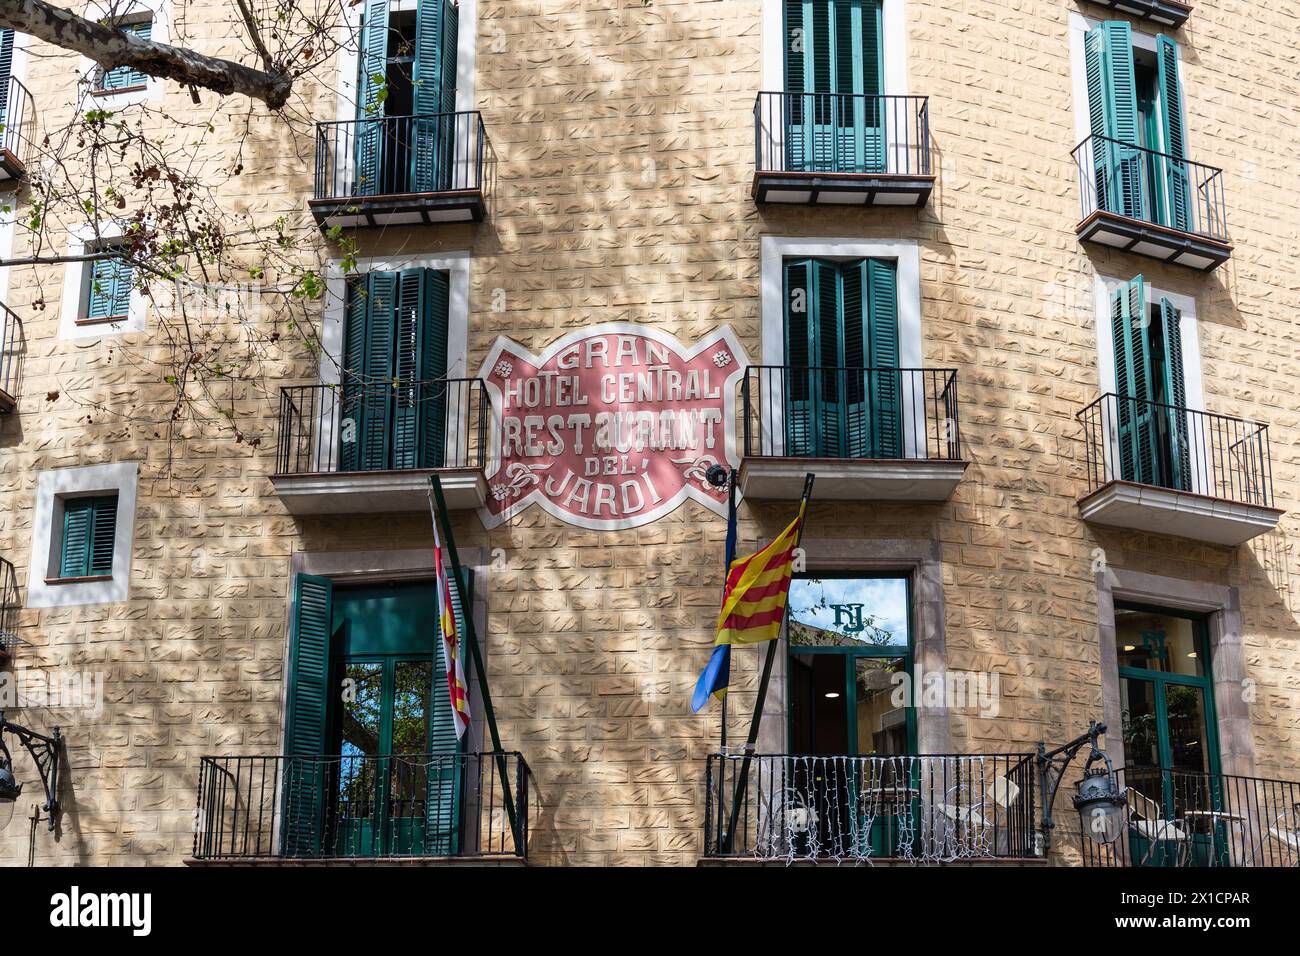 Barcelone, Espagne : façades de maisons à la Placa del Pi, une charmante place située dans le quartier gothique (Barri Gotic) Banque D'Images